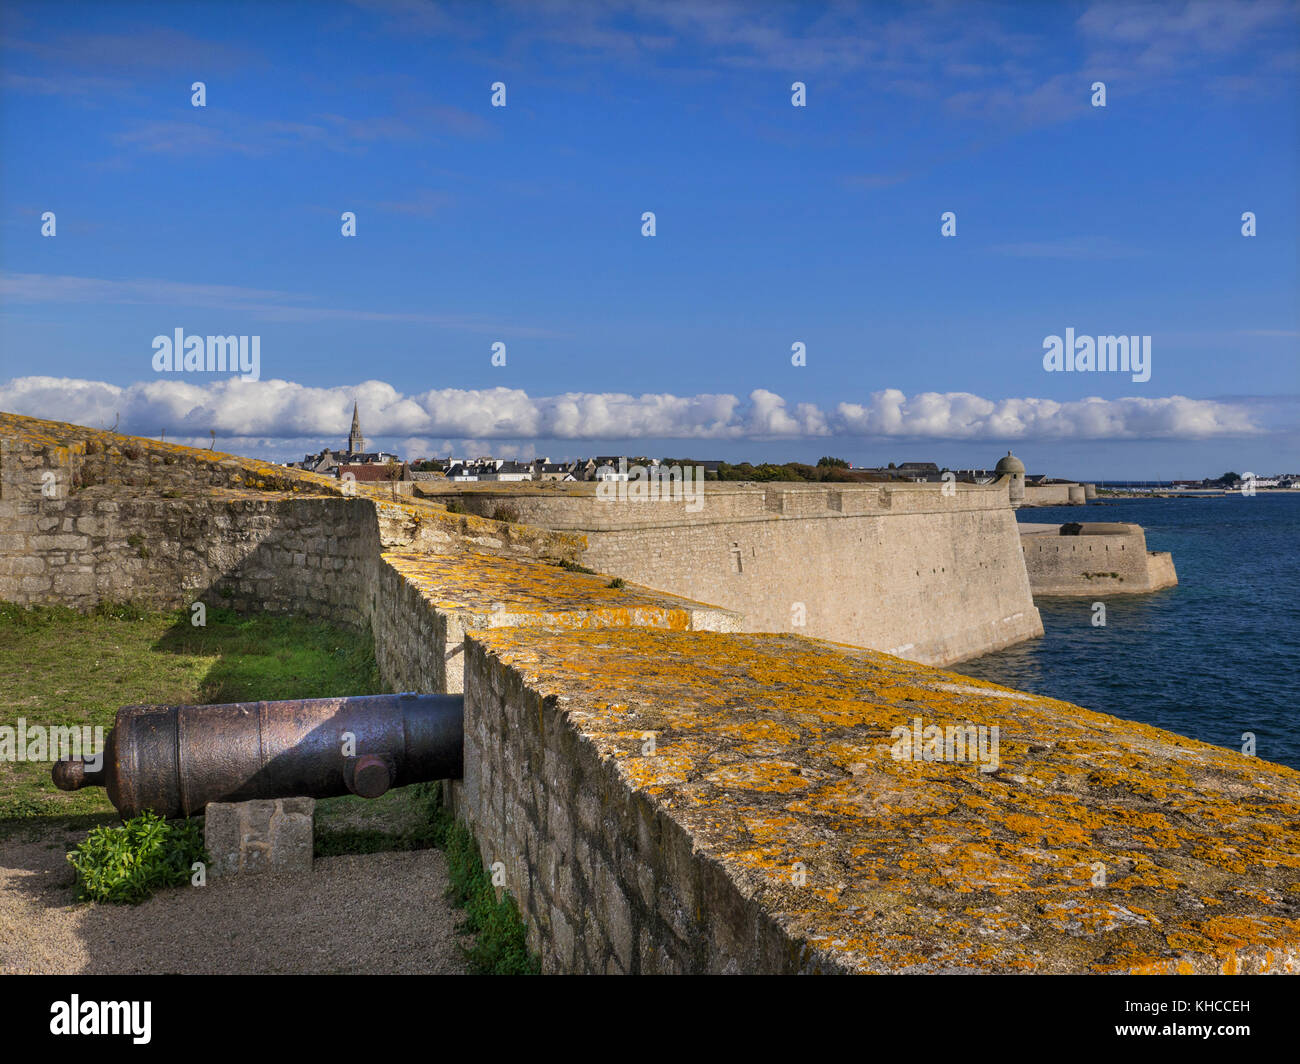 FORT CANNON à La Citadelle La Citadelle / une région côtière en forme d'étoiles historique fort, construit en 1591 à Port-Louis, Lorient, Bretagne France Banque D'Images